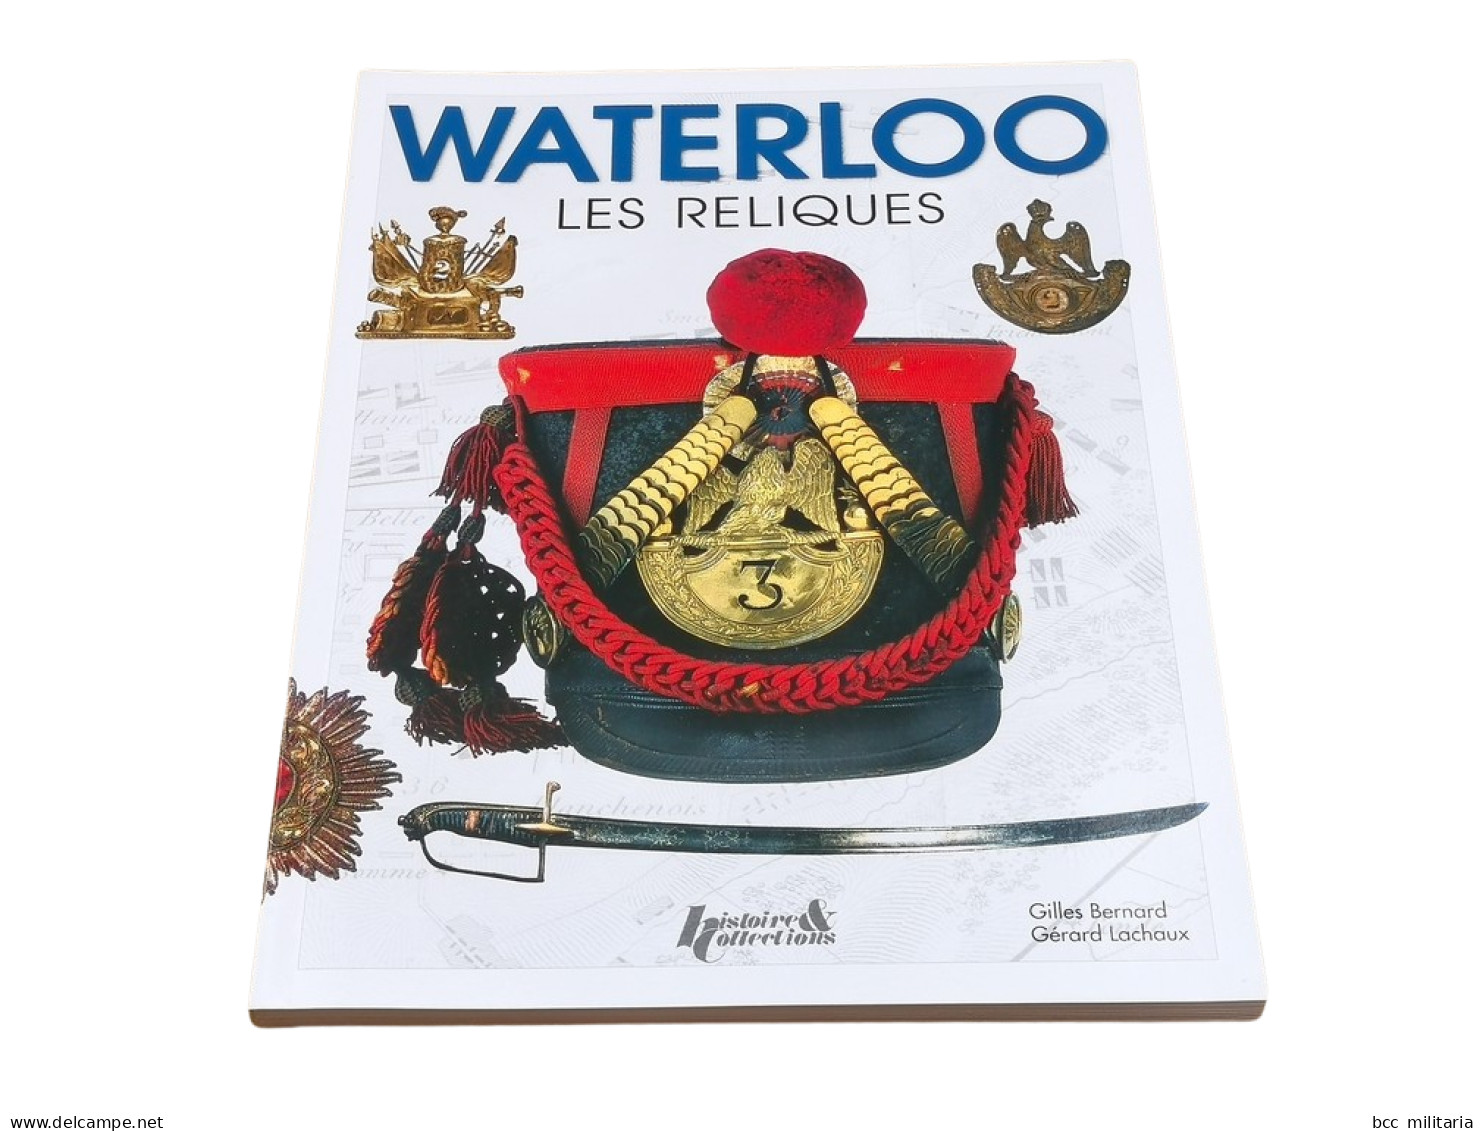 WATERLOO, LES RELIQUES Histoire Et Collections 128 Pages Livre Neuf - Francese